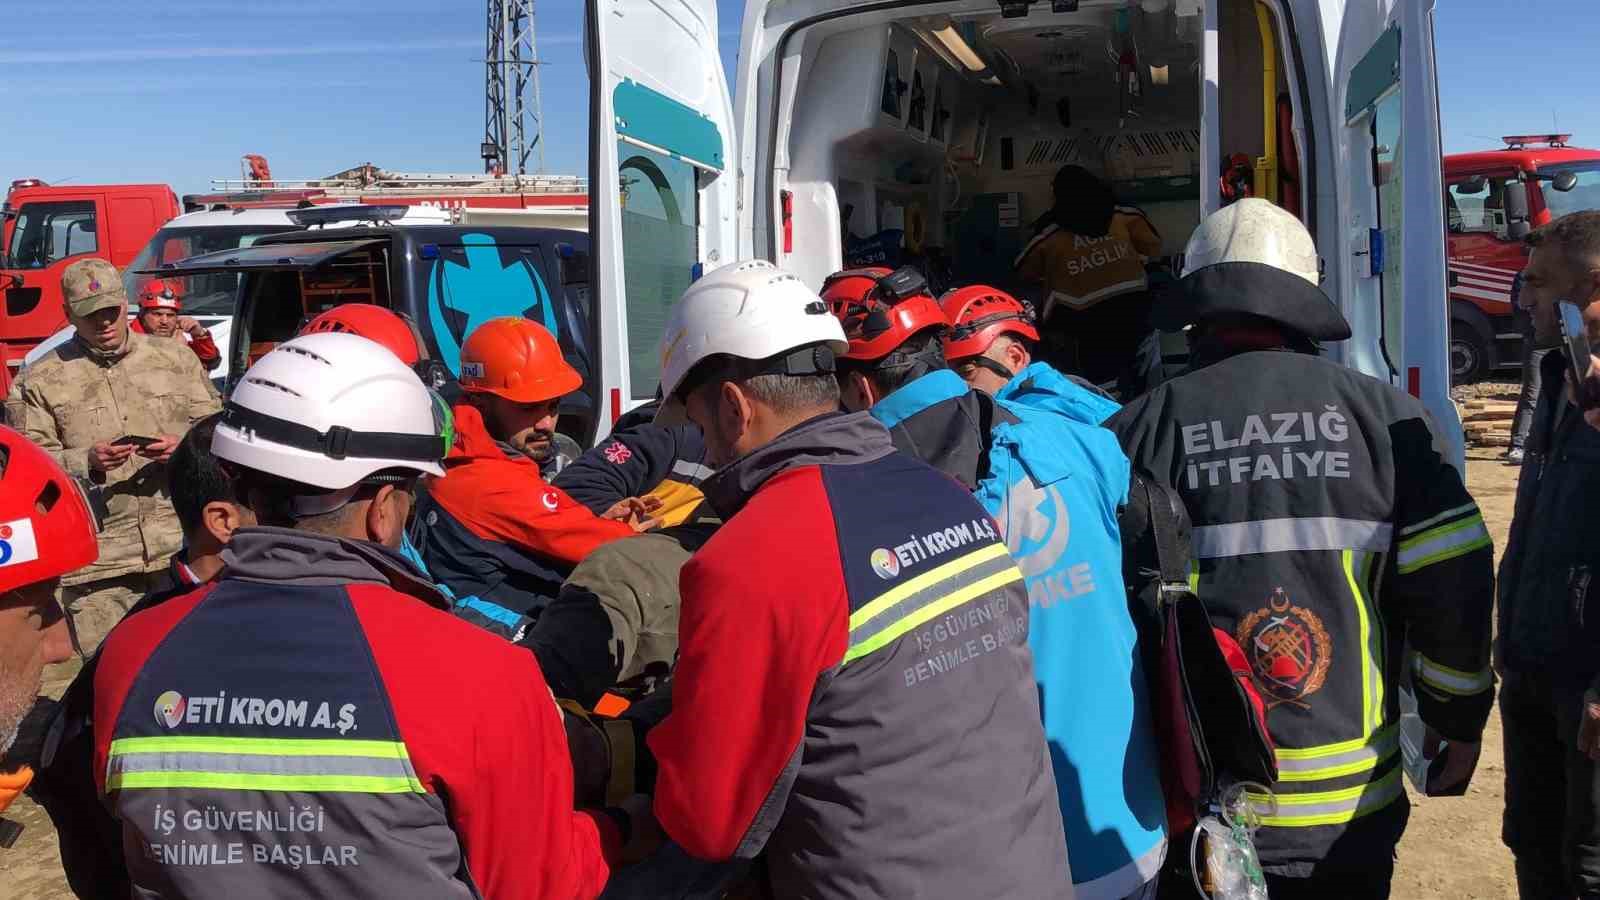 (Düzeltme) Elazığ’da maden ocağında göçük: 3 işçi kurtarıldı, 1 işçi göçük altında
